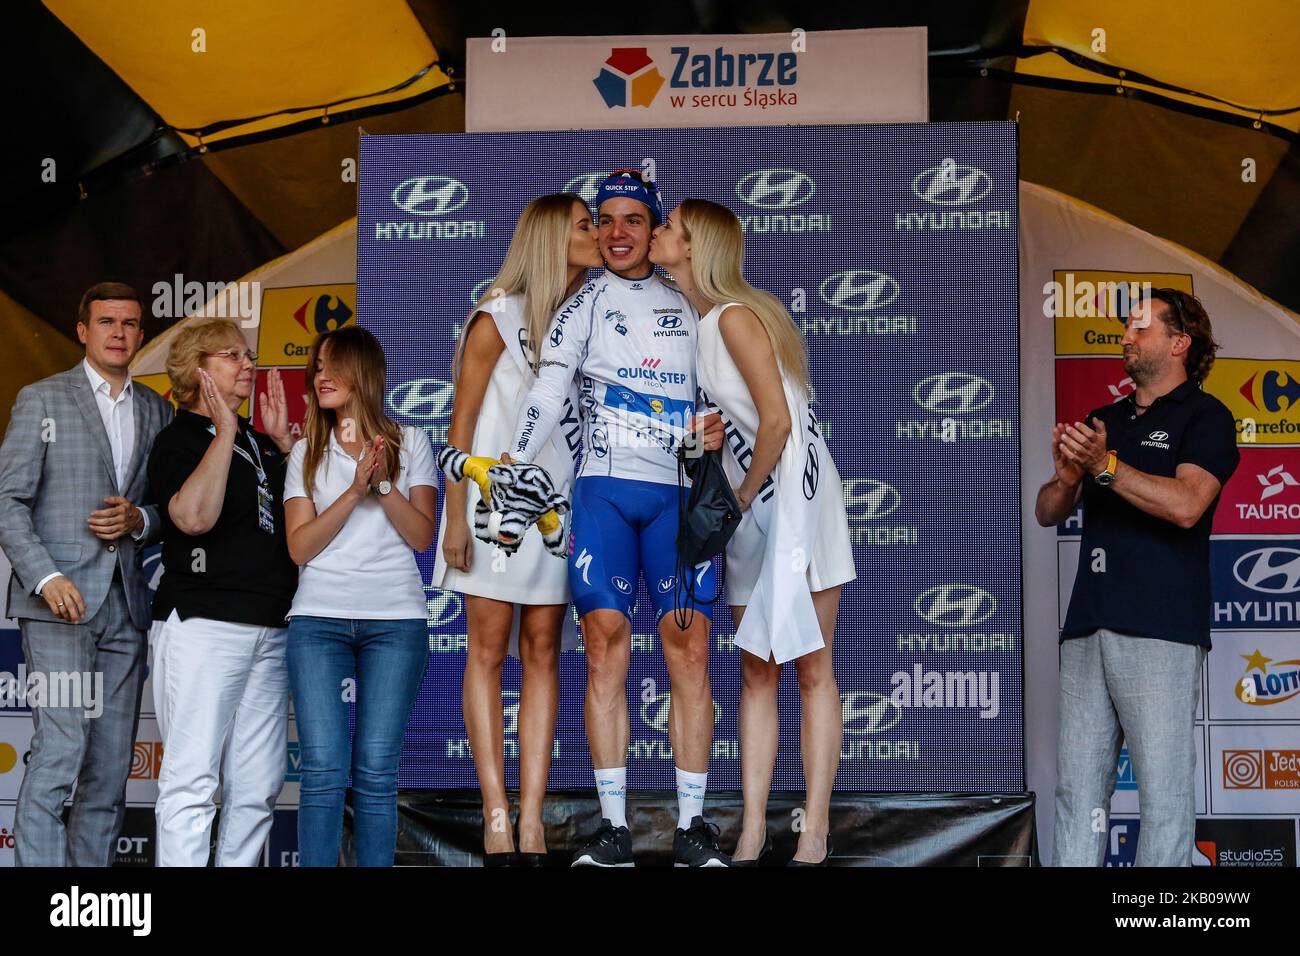 Alvaro José HODEG CHAGUI reçoit le prix spécial Hyundai comme meilleur sprinter lors de la cérémonie de décoration après avoir remporté la troisième étape du Tour de Bologne 75th, tournée mondiale de l'UCI à Zabrze, Pologne sur 6 août 2018. (Photo par Dominika Zarzycka/NurPhoto) Banque D'Images